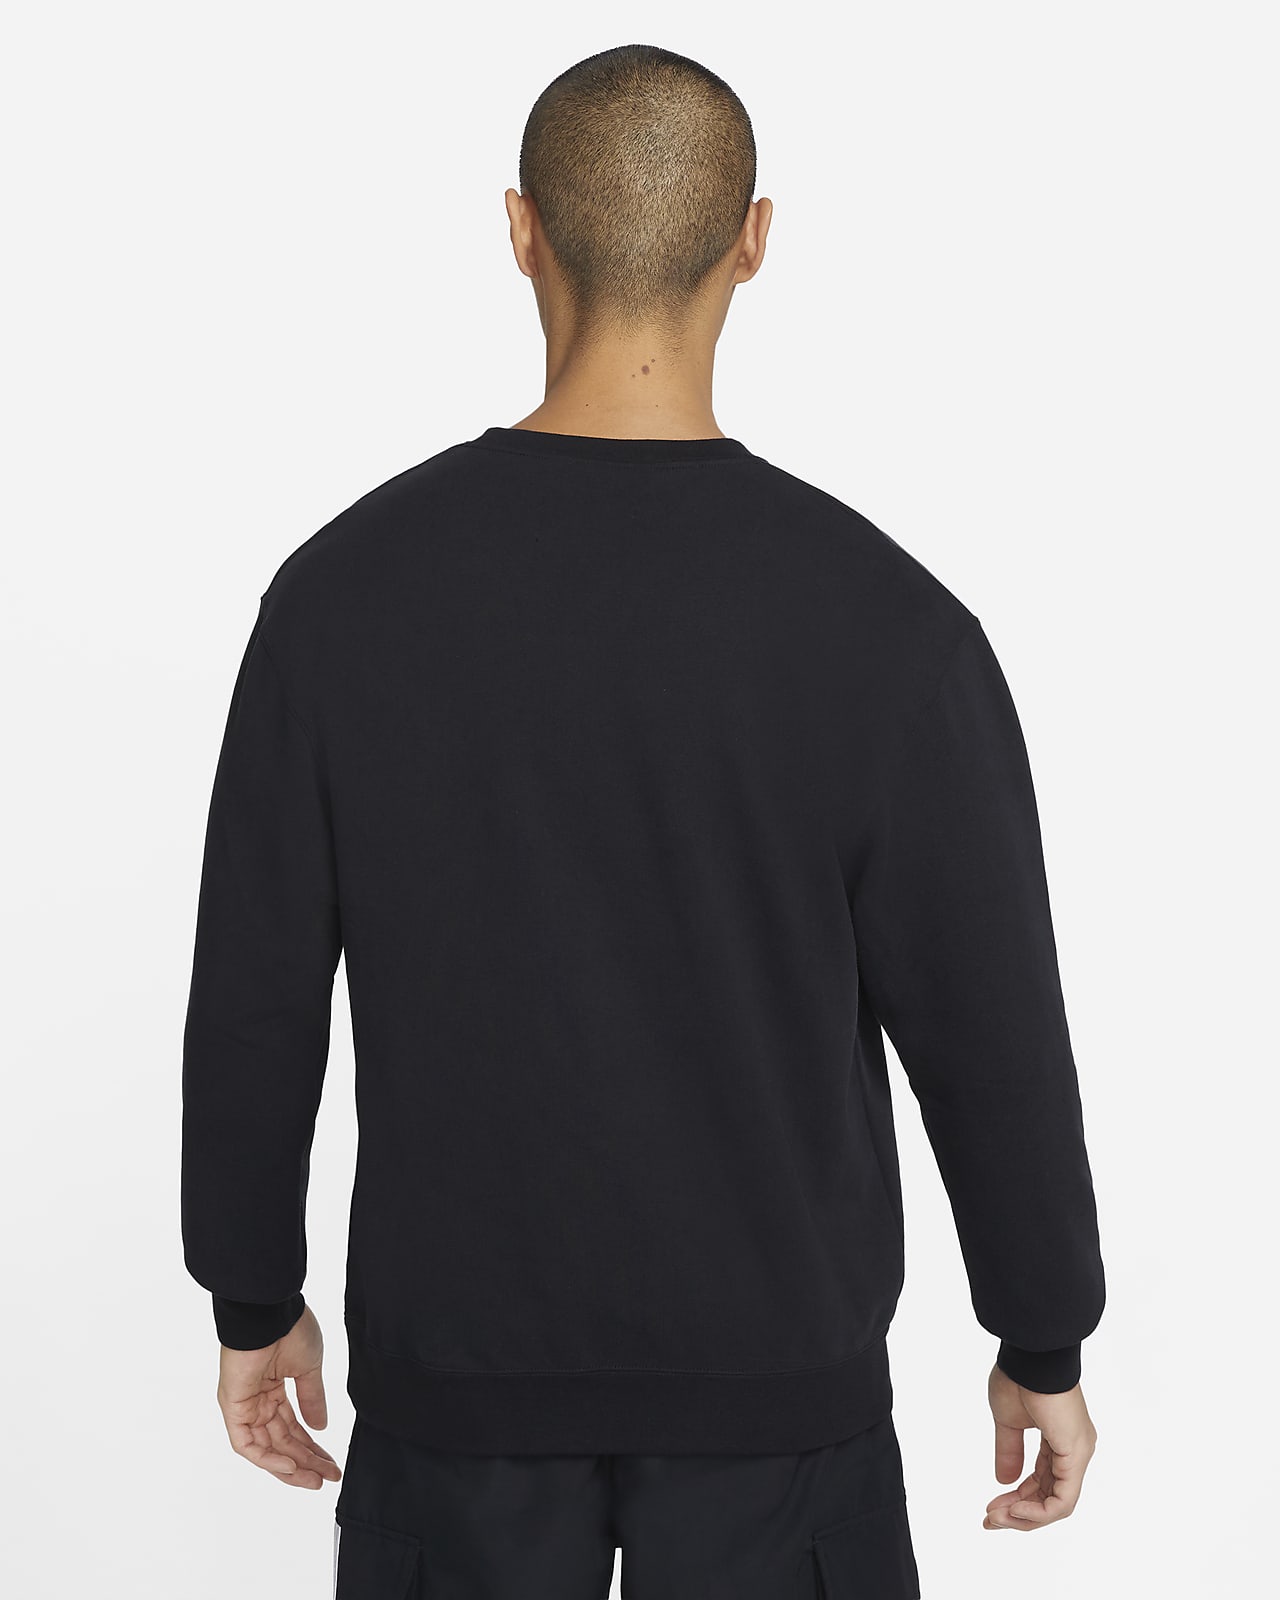 Jordan Statement Essentials Men's Fleece Crew Sweatshirt. Nike SA